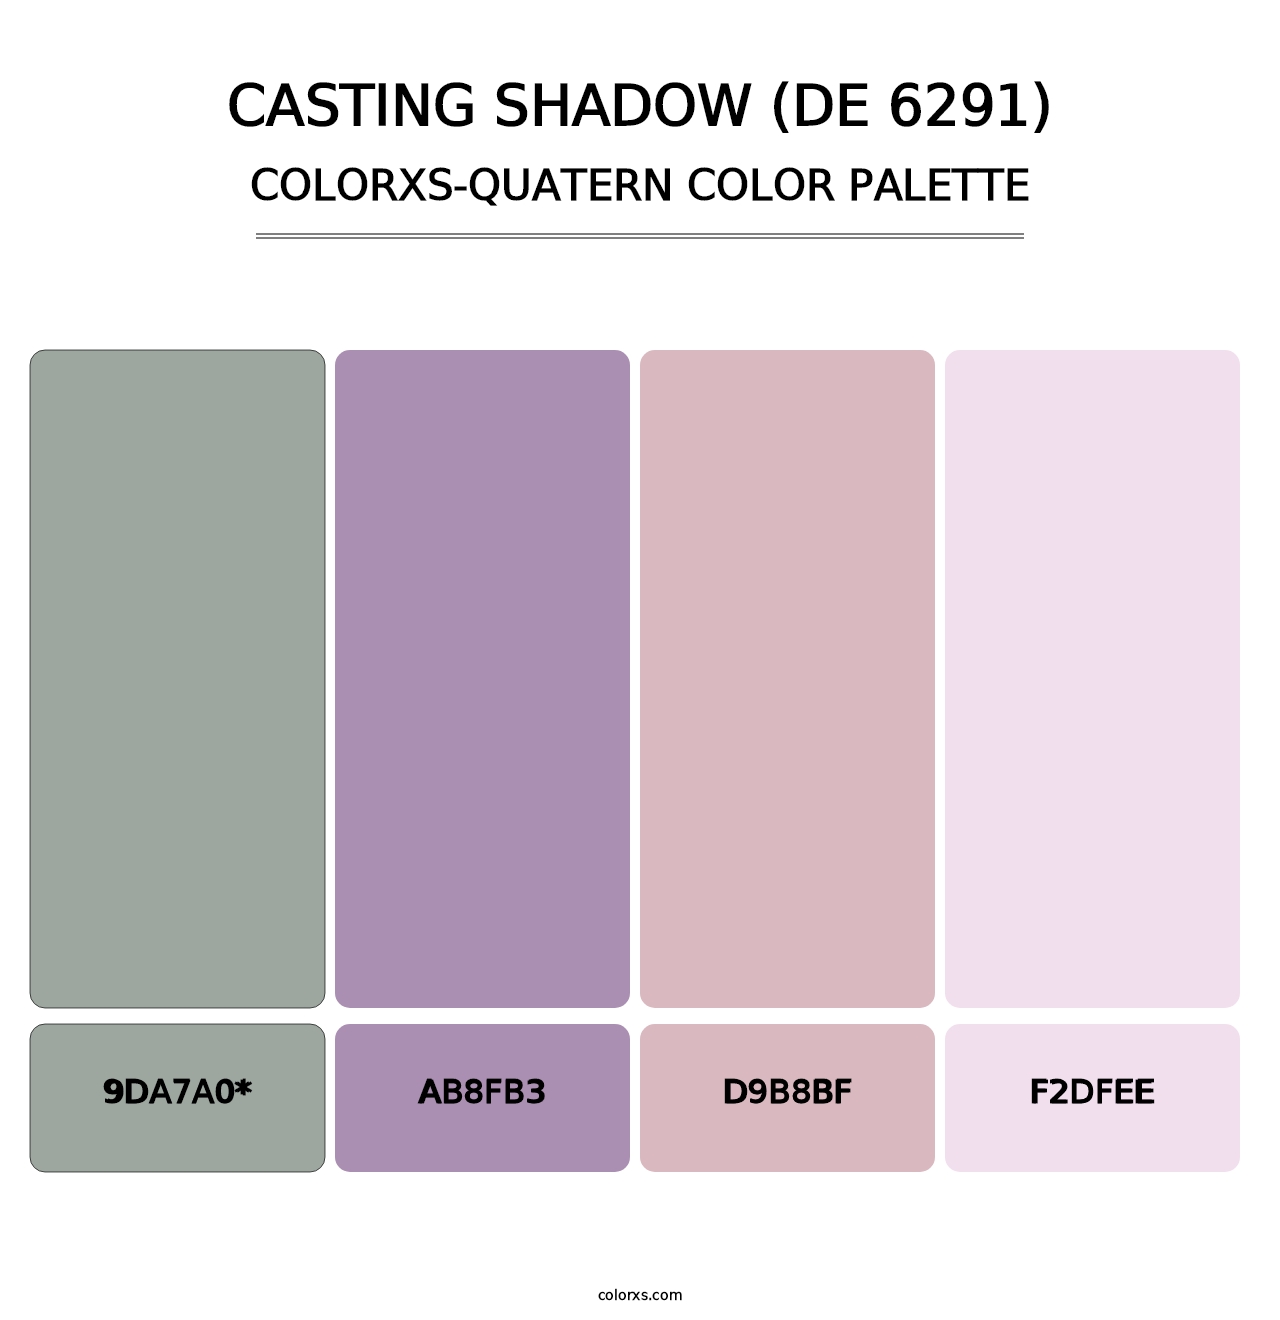 Casting Shadow (DE 6291) - Colorxs Quatern Palette